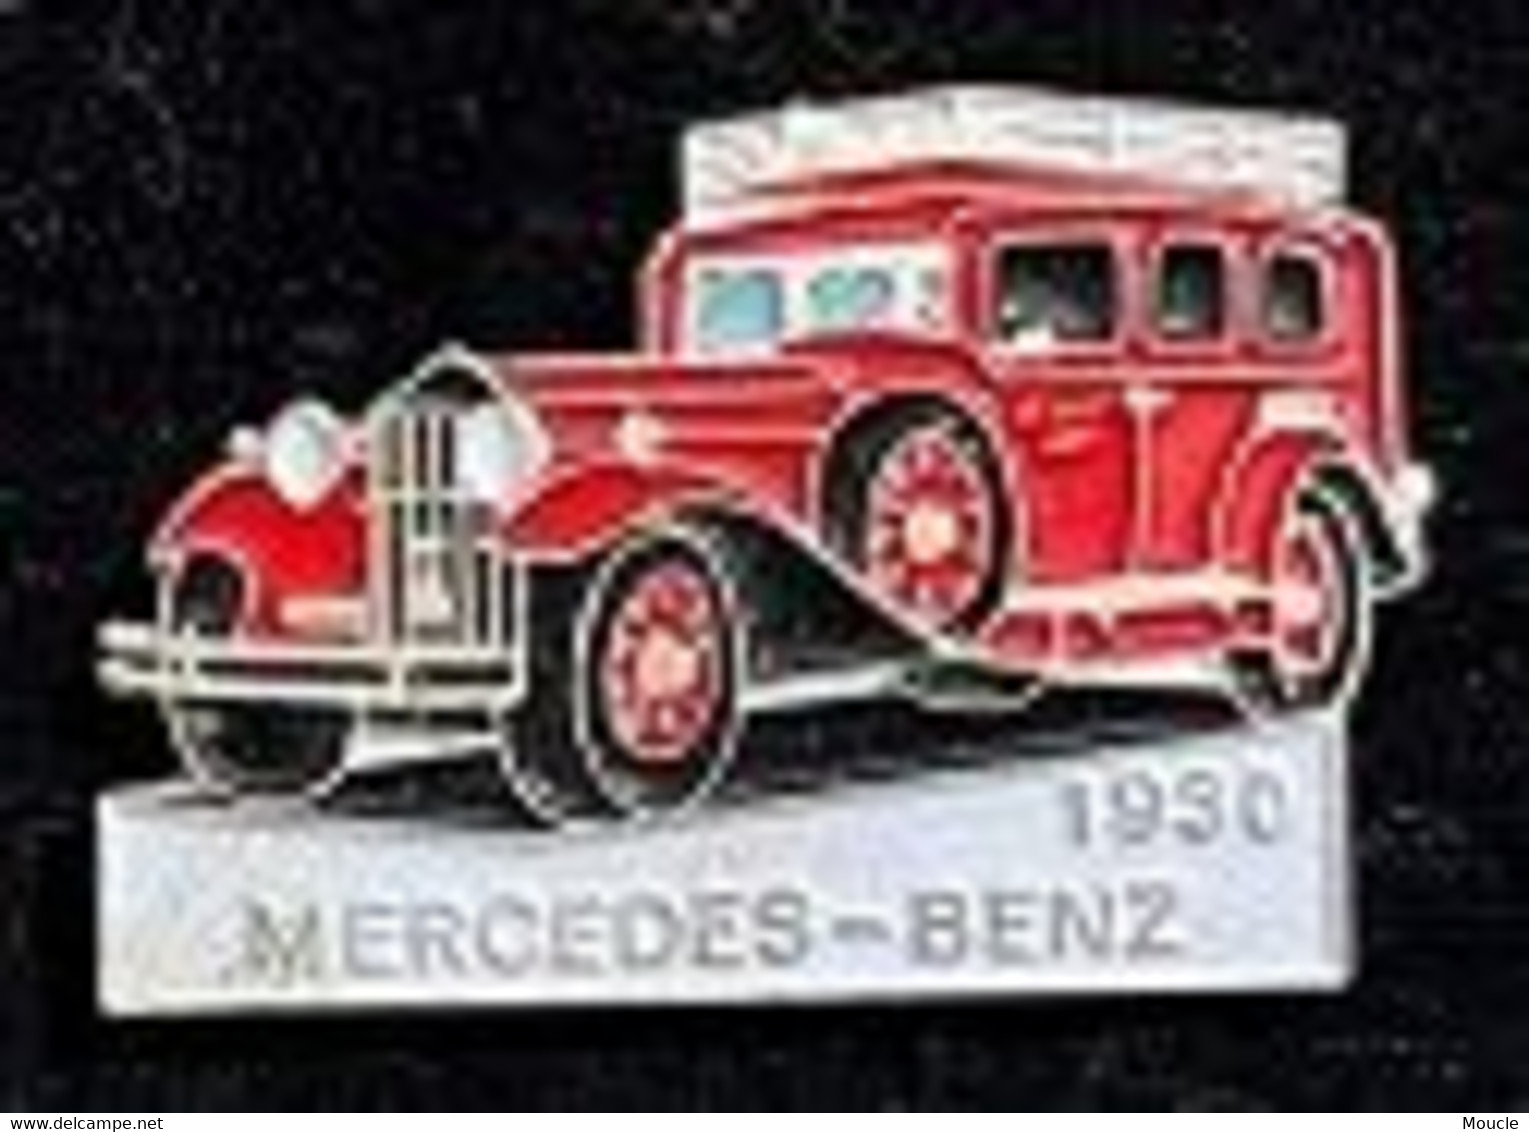 MERCEDES BENZ 1930 - ROUGE N°146 - SAPEURS POMPIERS - FEUEWEHRAUTO - VOITURE POMPIERS -CAR - AUTOMOBILE -     (30) - Pompiers